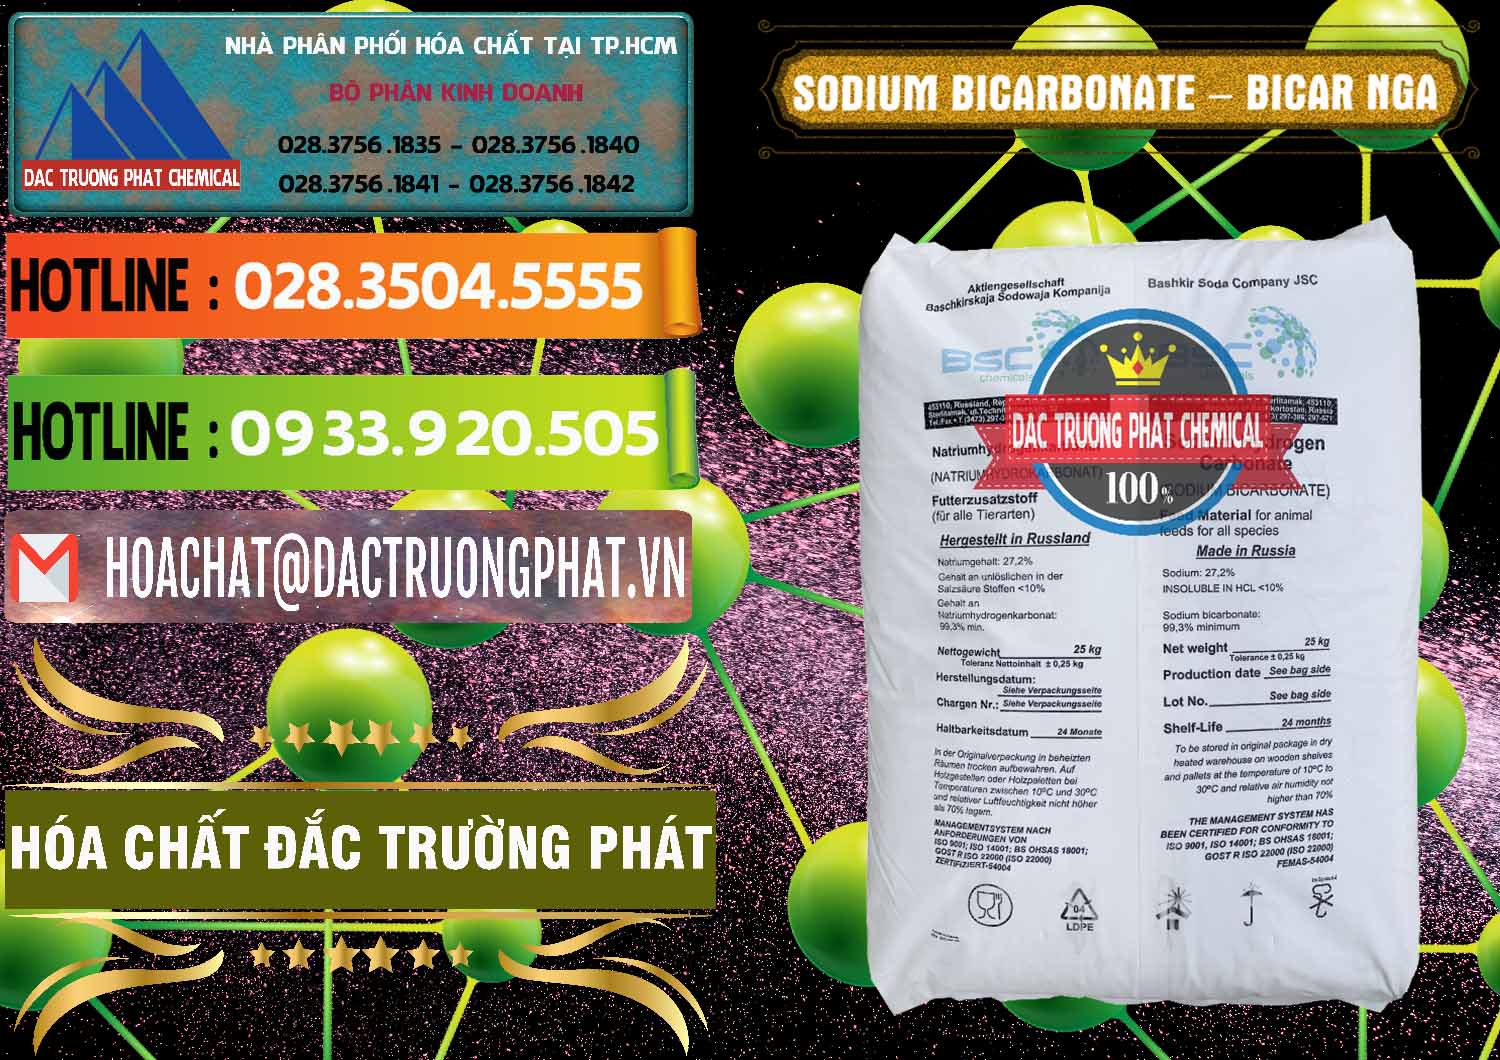 Chuyên bán và cung ứng Sodium Bicarbonate – Bicar NaHCO3 Nga Russia - 0425 - Chuyên cung cấp & phân phối hóa chất tại TP.HCM - cungcaphoachat.com.vn